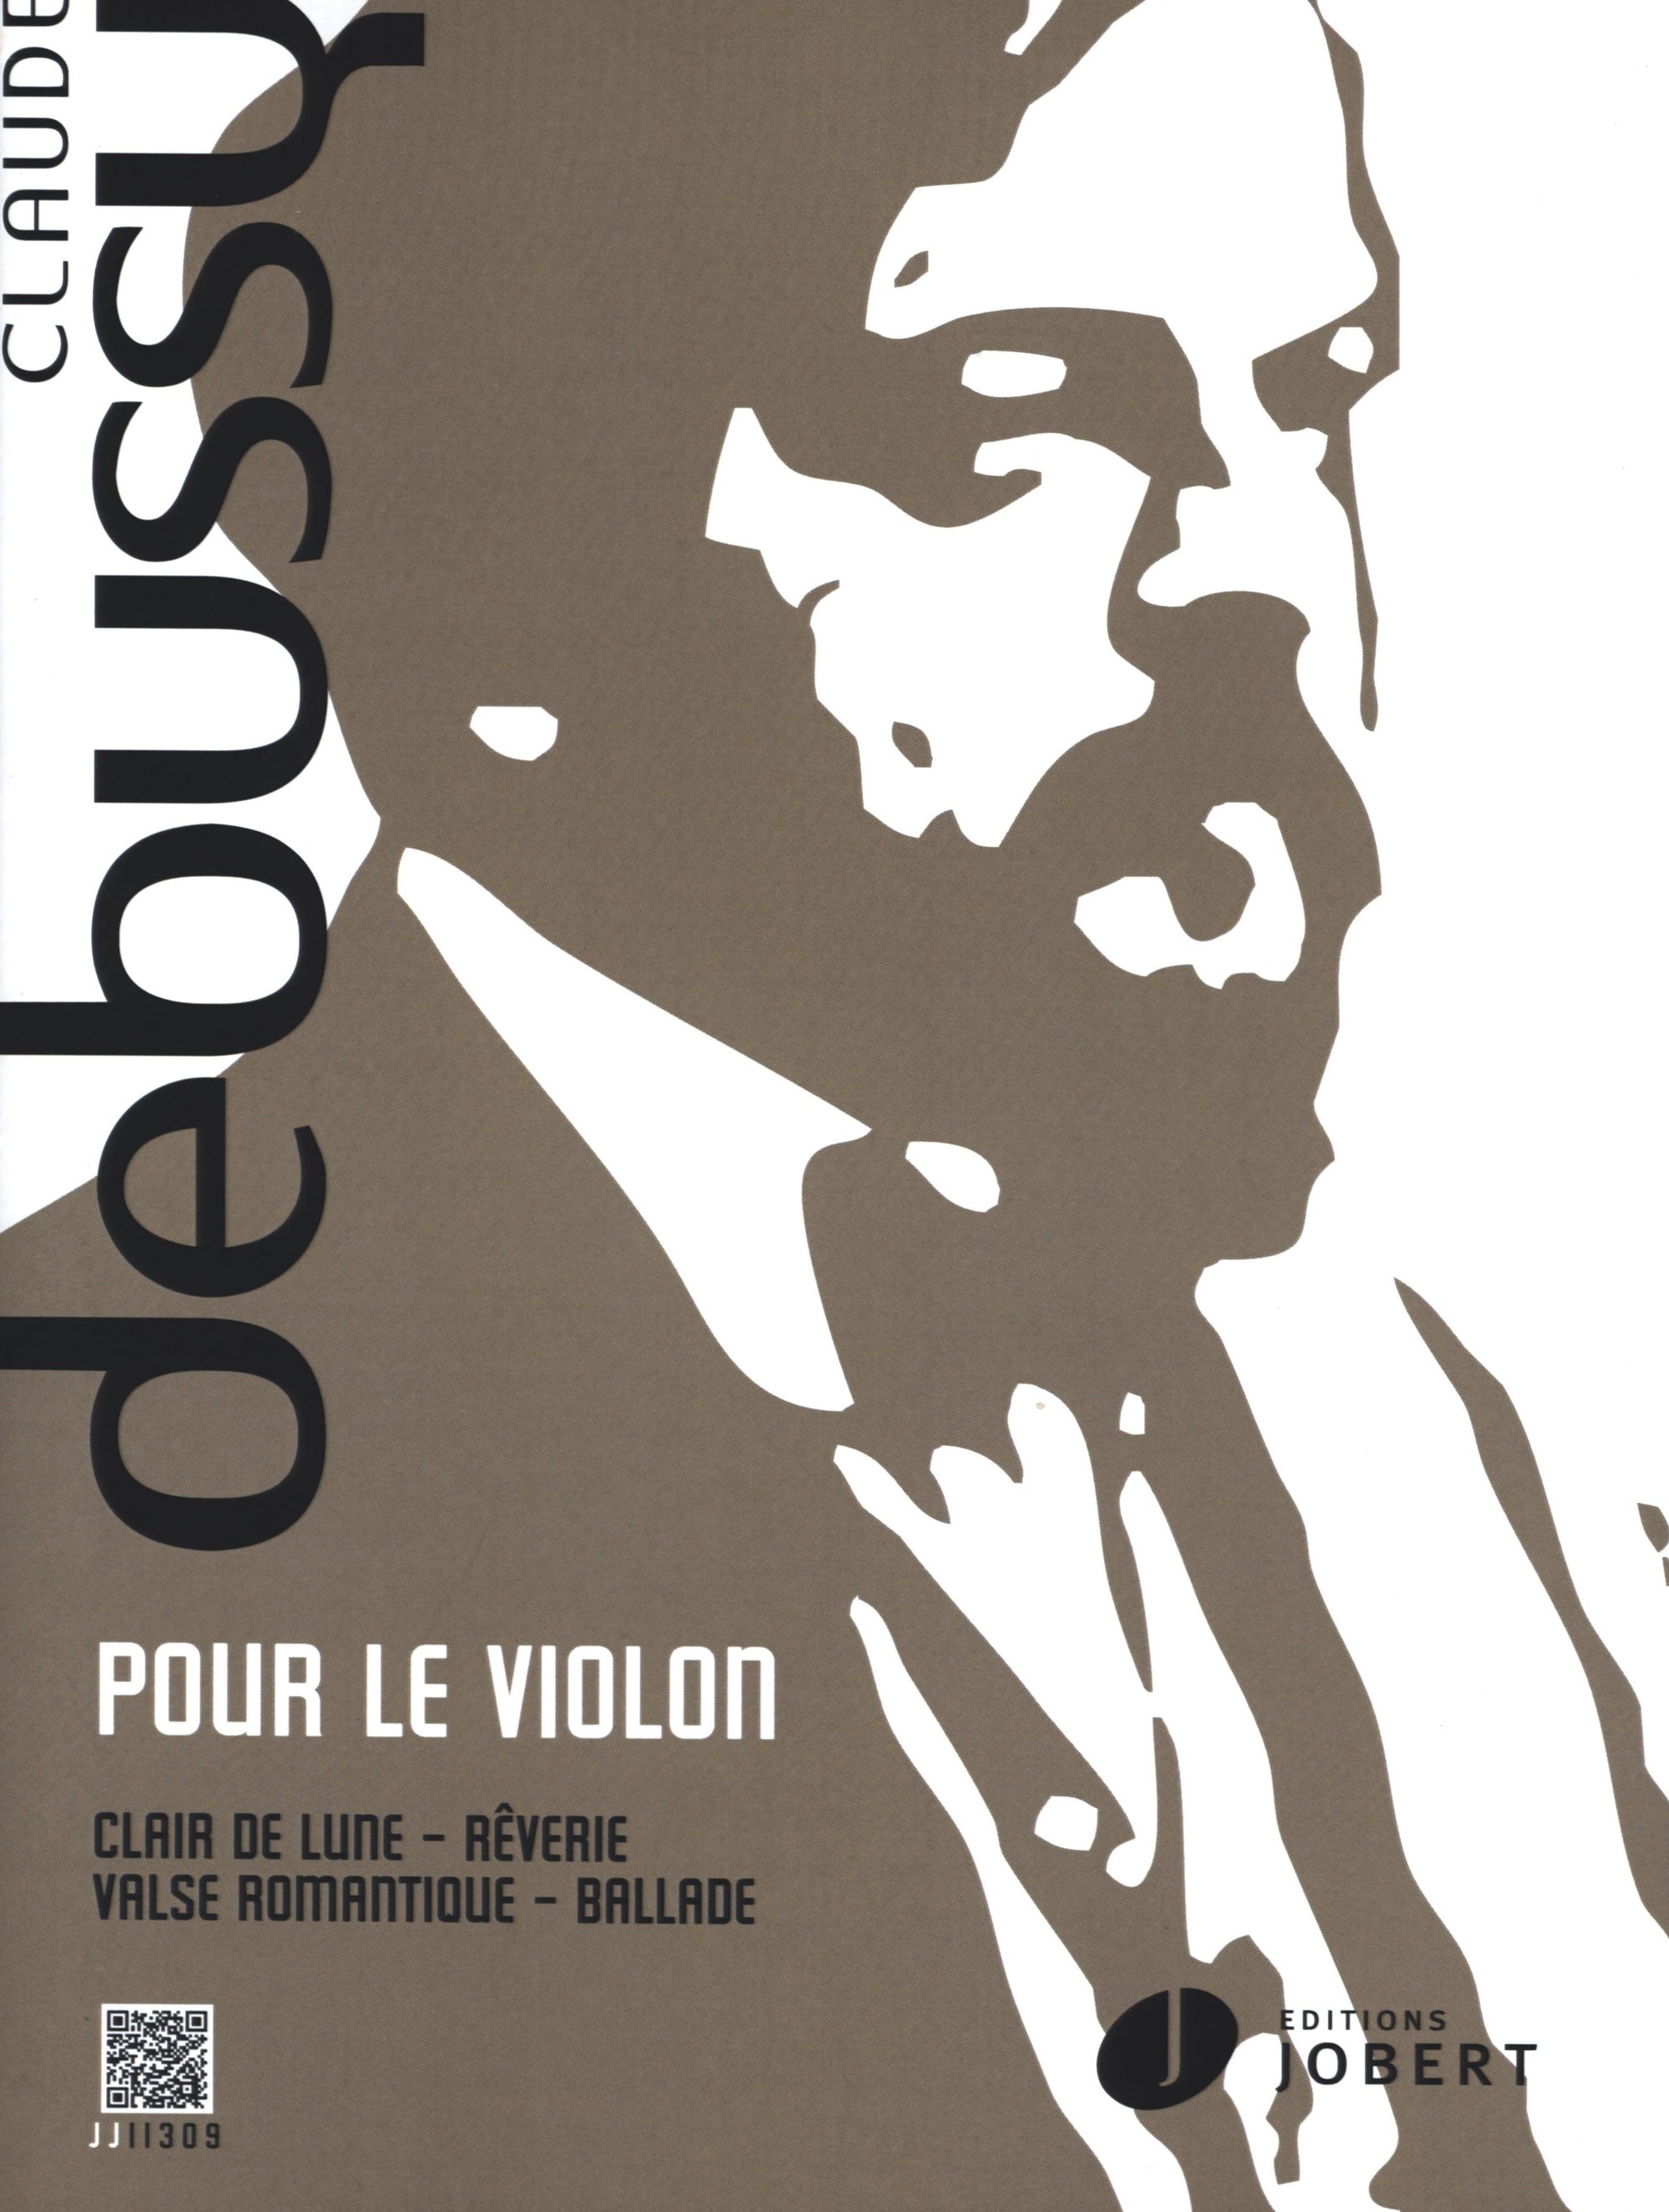 Debussy: Pour le violon